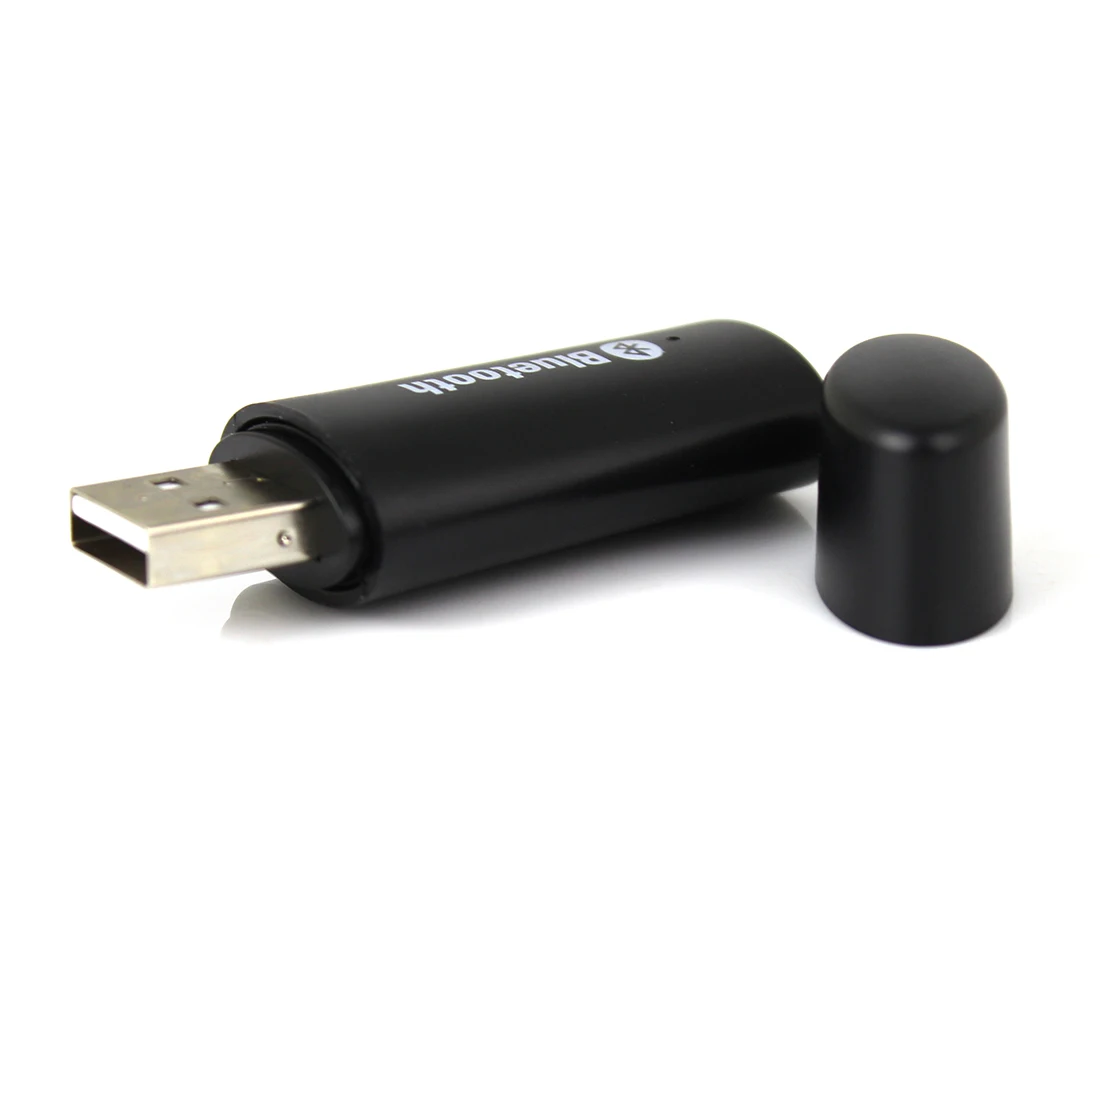 Noyokere Новинка года Универсальный Bluetooth 3.5 мм USB приемник музыке стерео аудио адаптер Черного цвета;